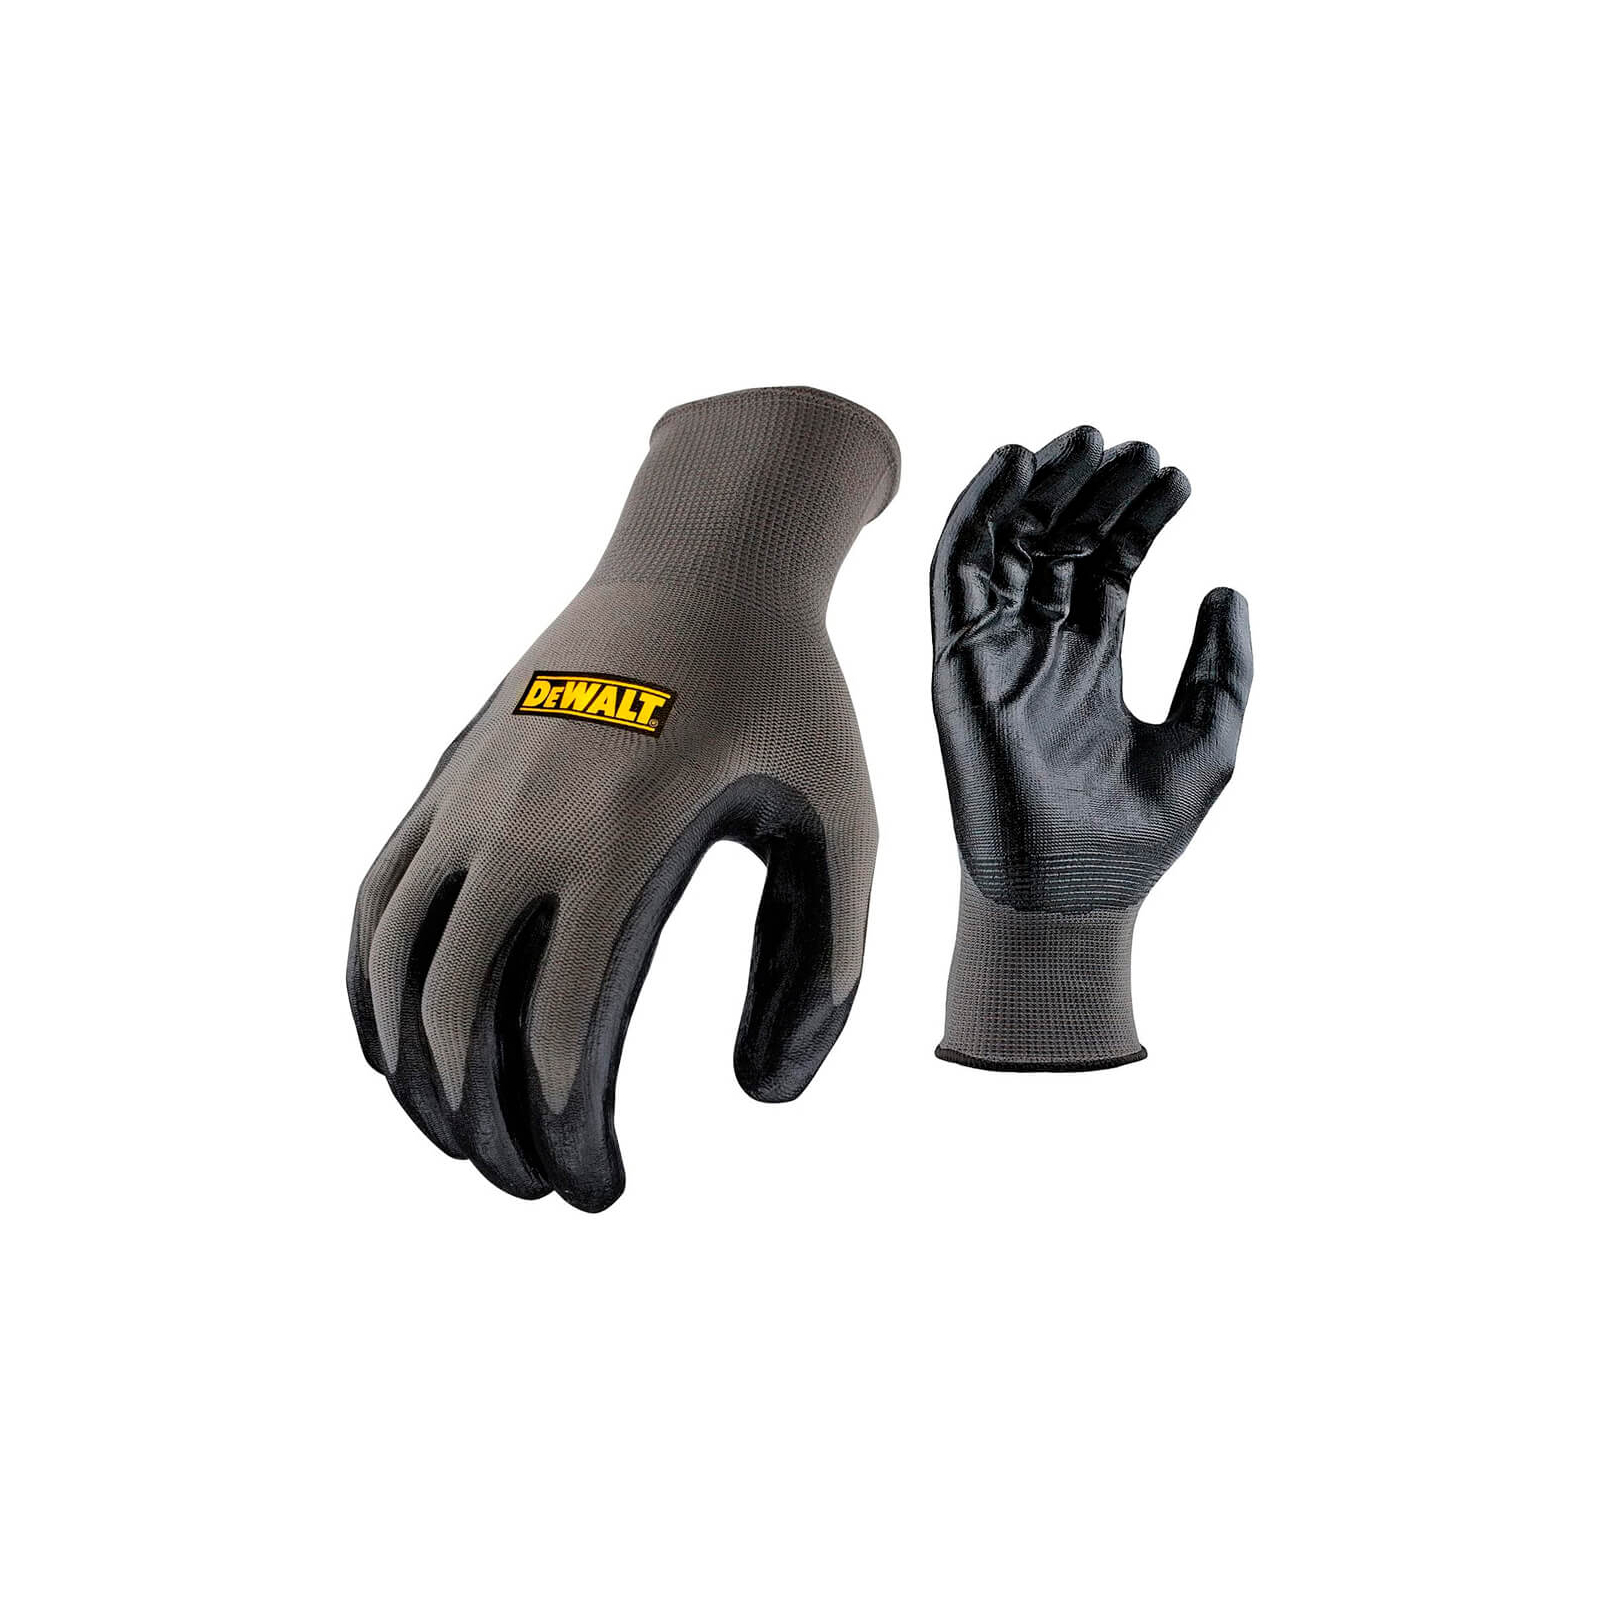 Захисні рукавиці DeWALT розм. L/9, нейлонові з покриттям нітрилом (DPG66L)